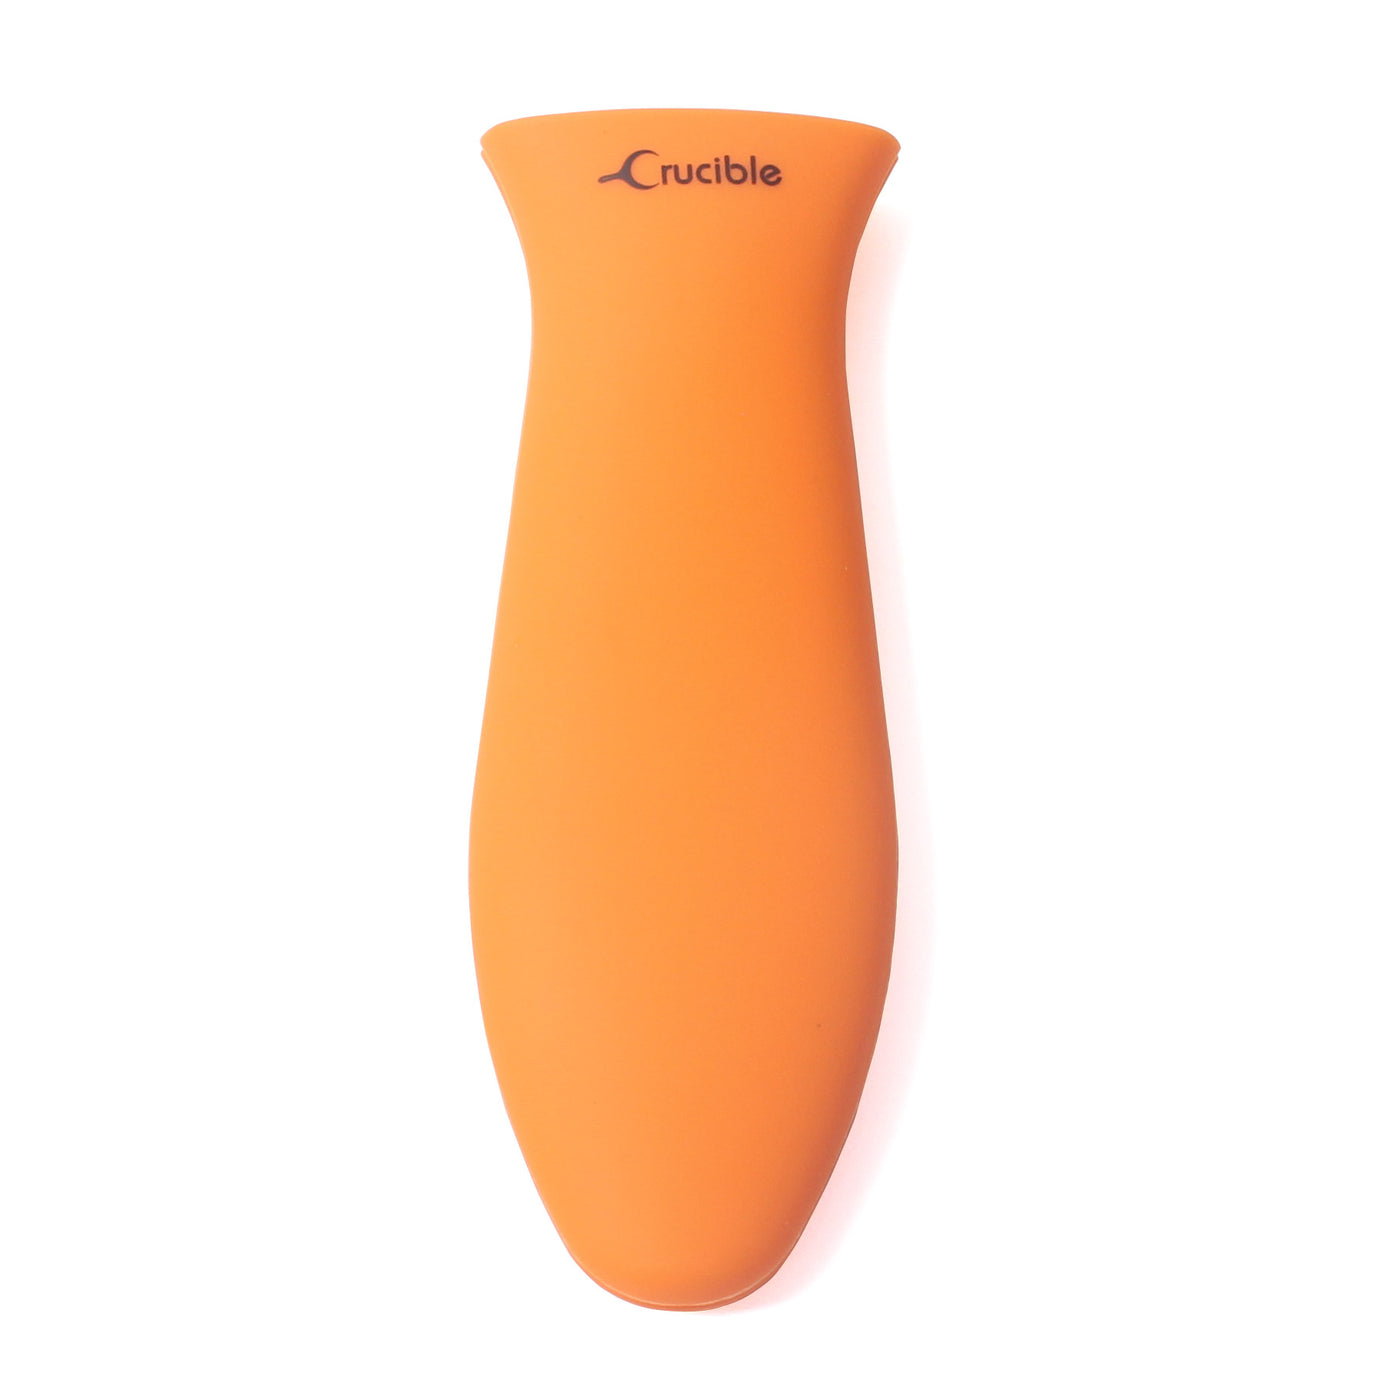 Силиконовый держатель для горячей ручки, прихватка (большая оранжевая), рукоятка, крышка ручки